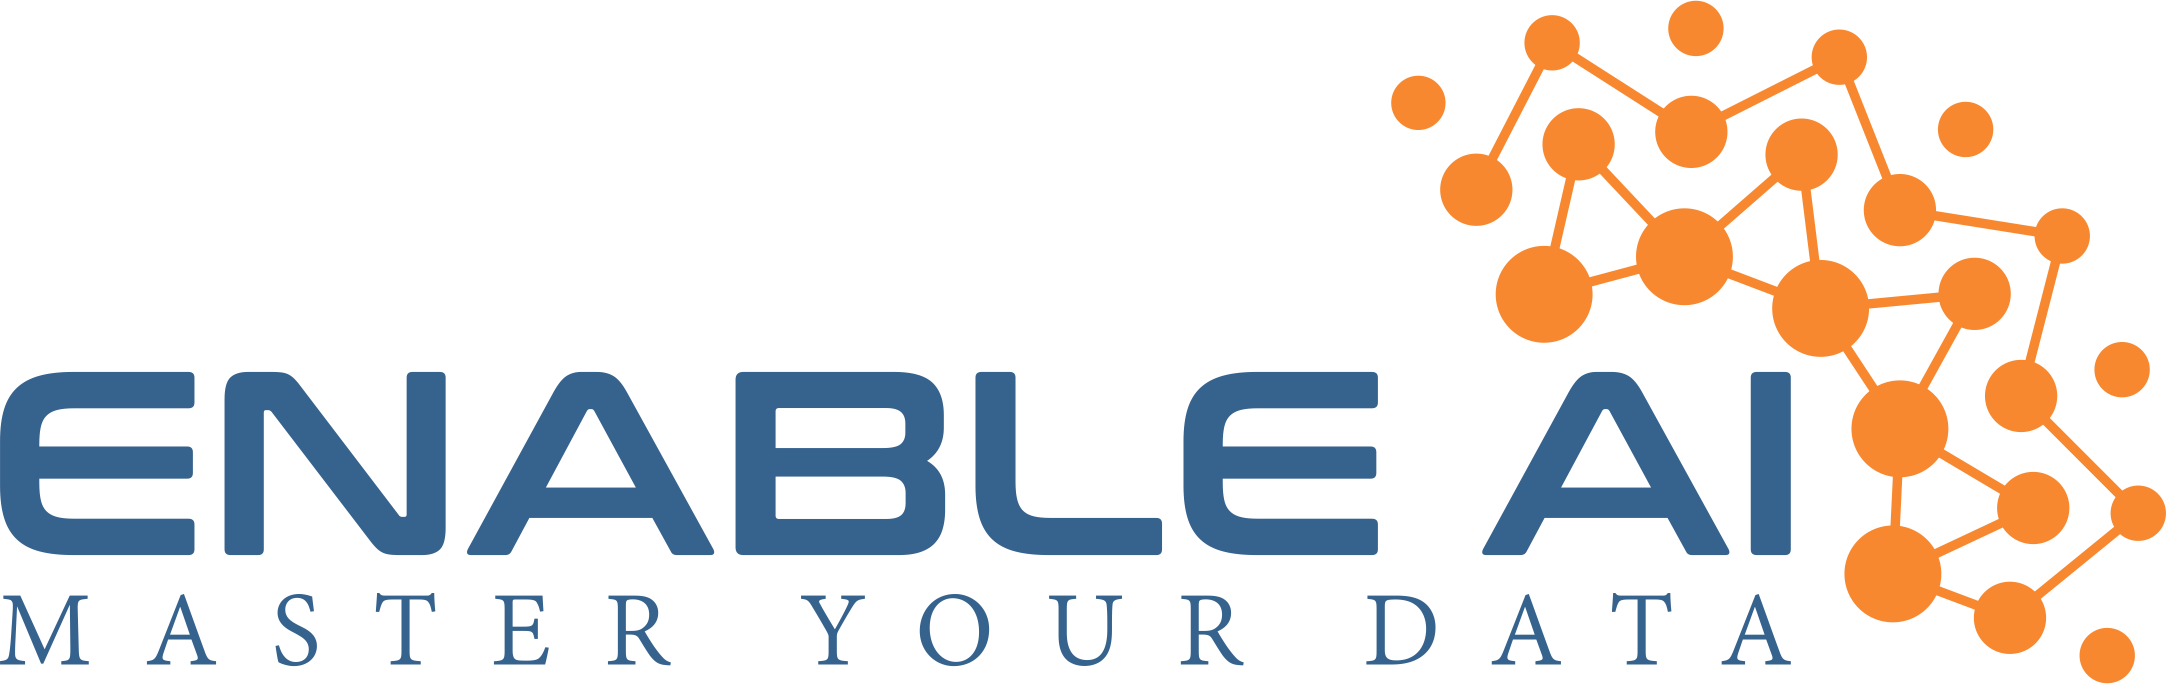 Enable AI Logo